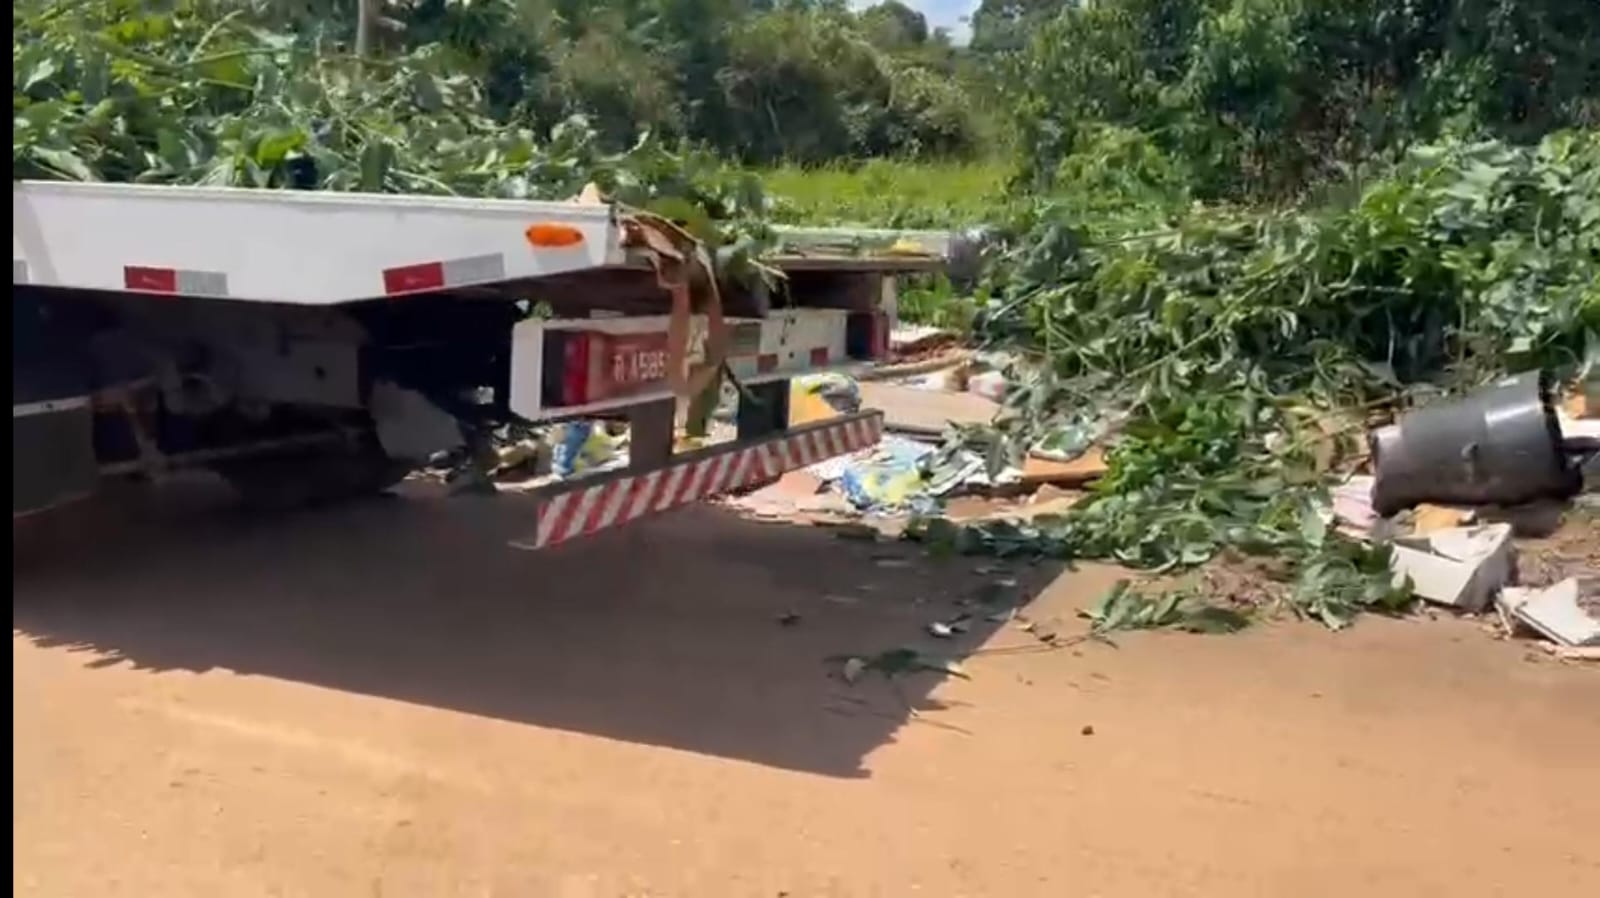 CENAS DA CIDADE: Caminhão é flagrado despejando lixo em via pública na capital